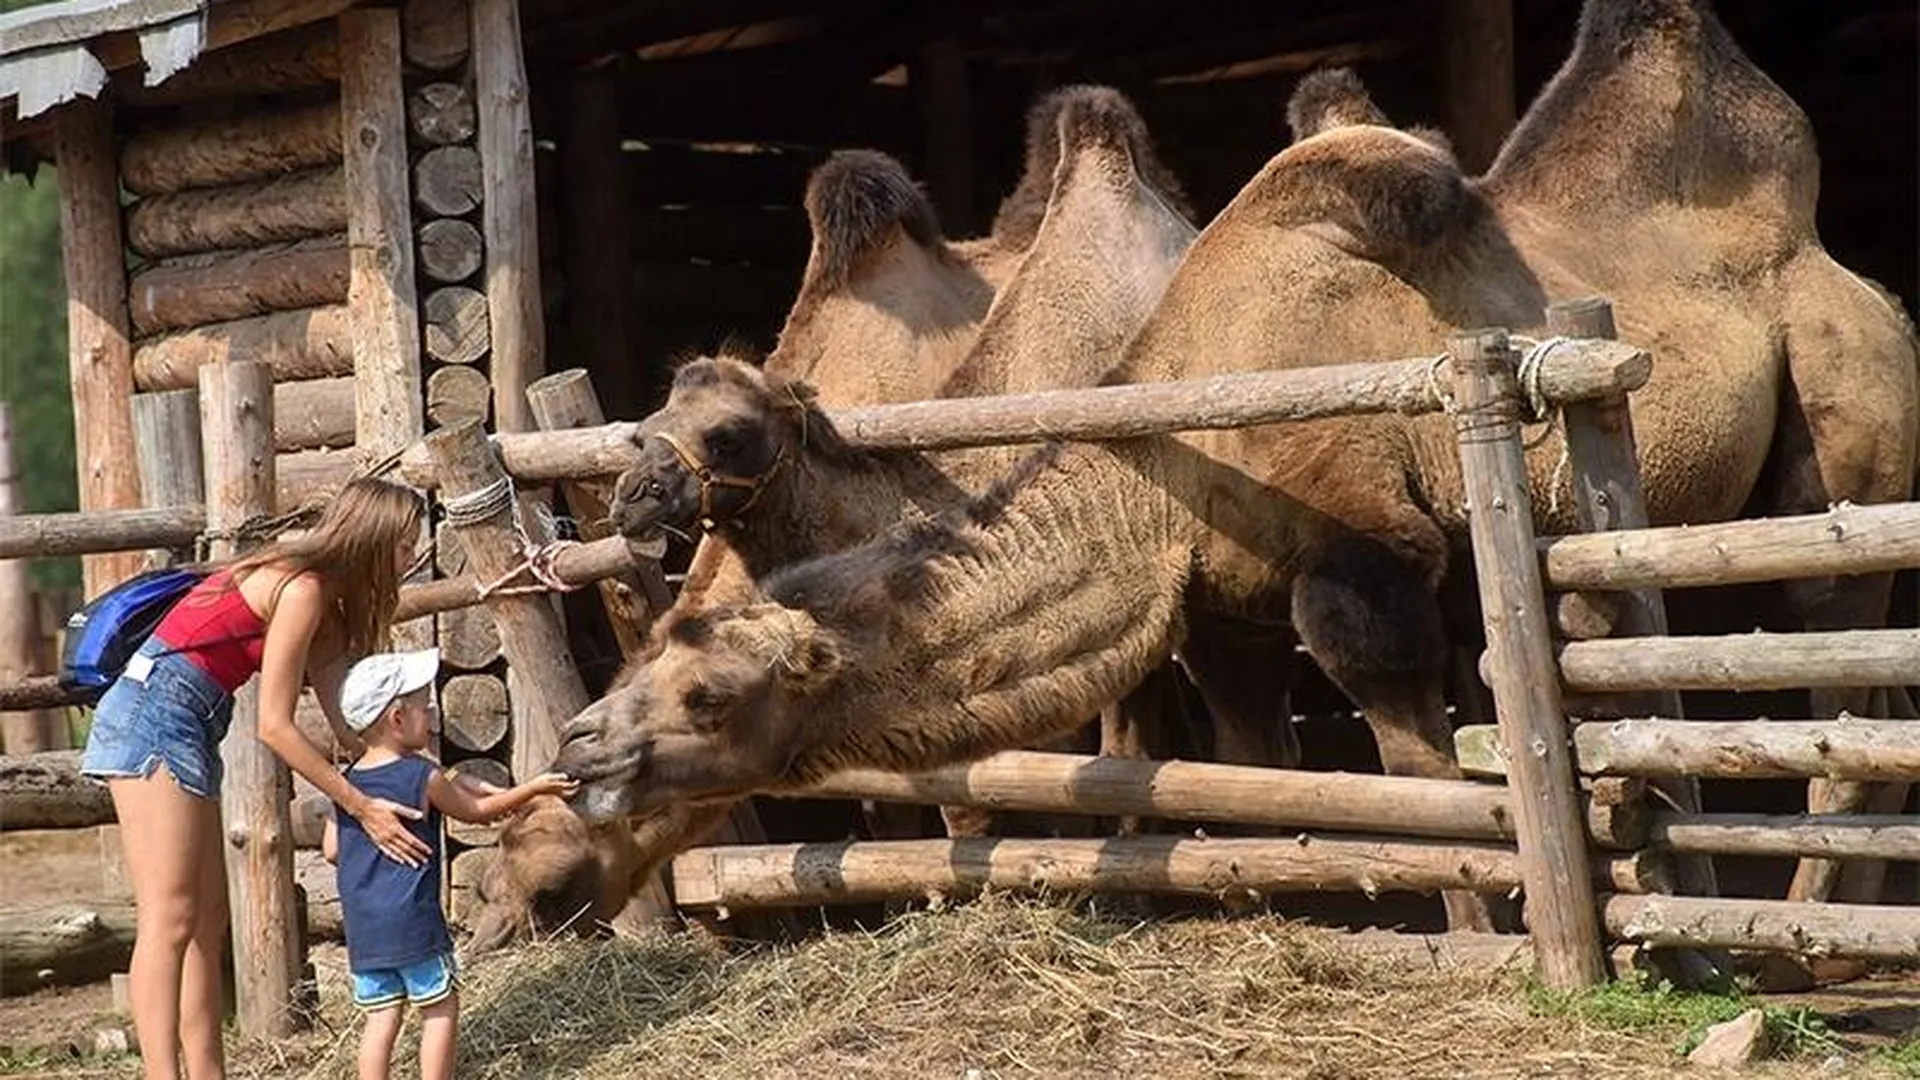 Пареную репу и знакомство с верблюдами предложат на майских гостям Подмосковья